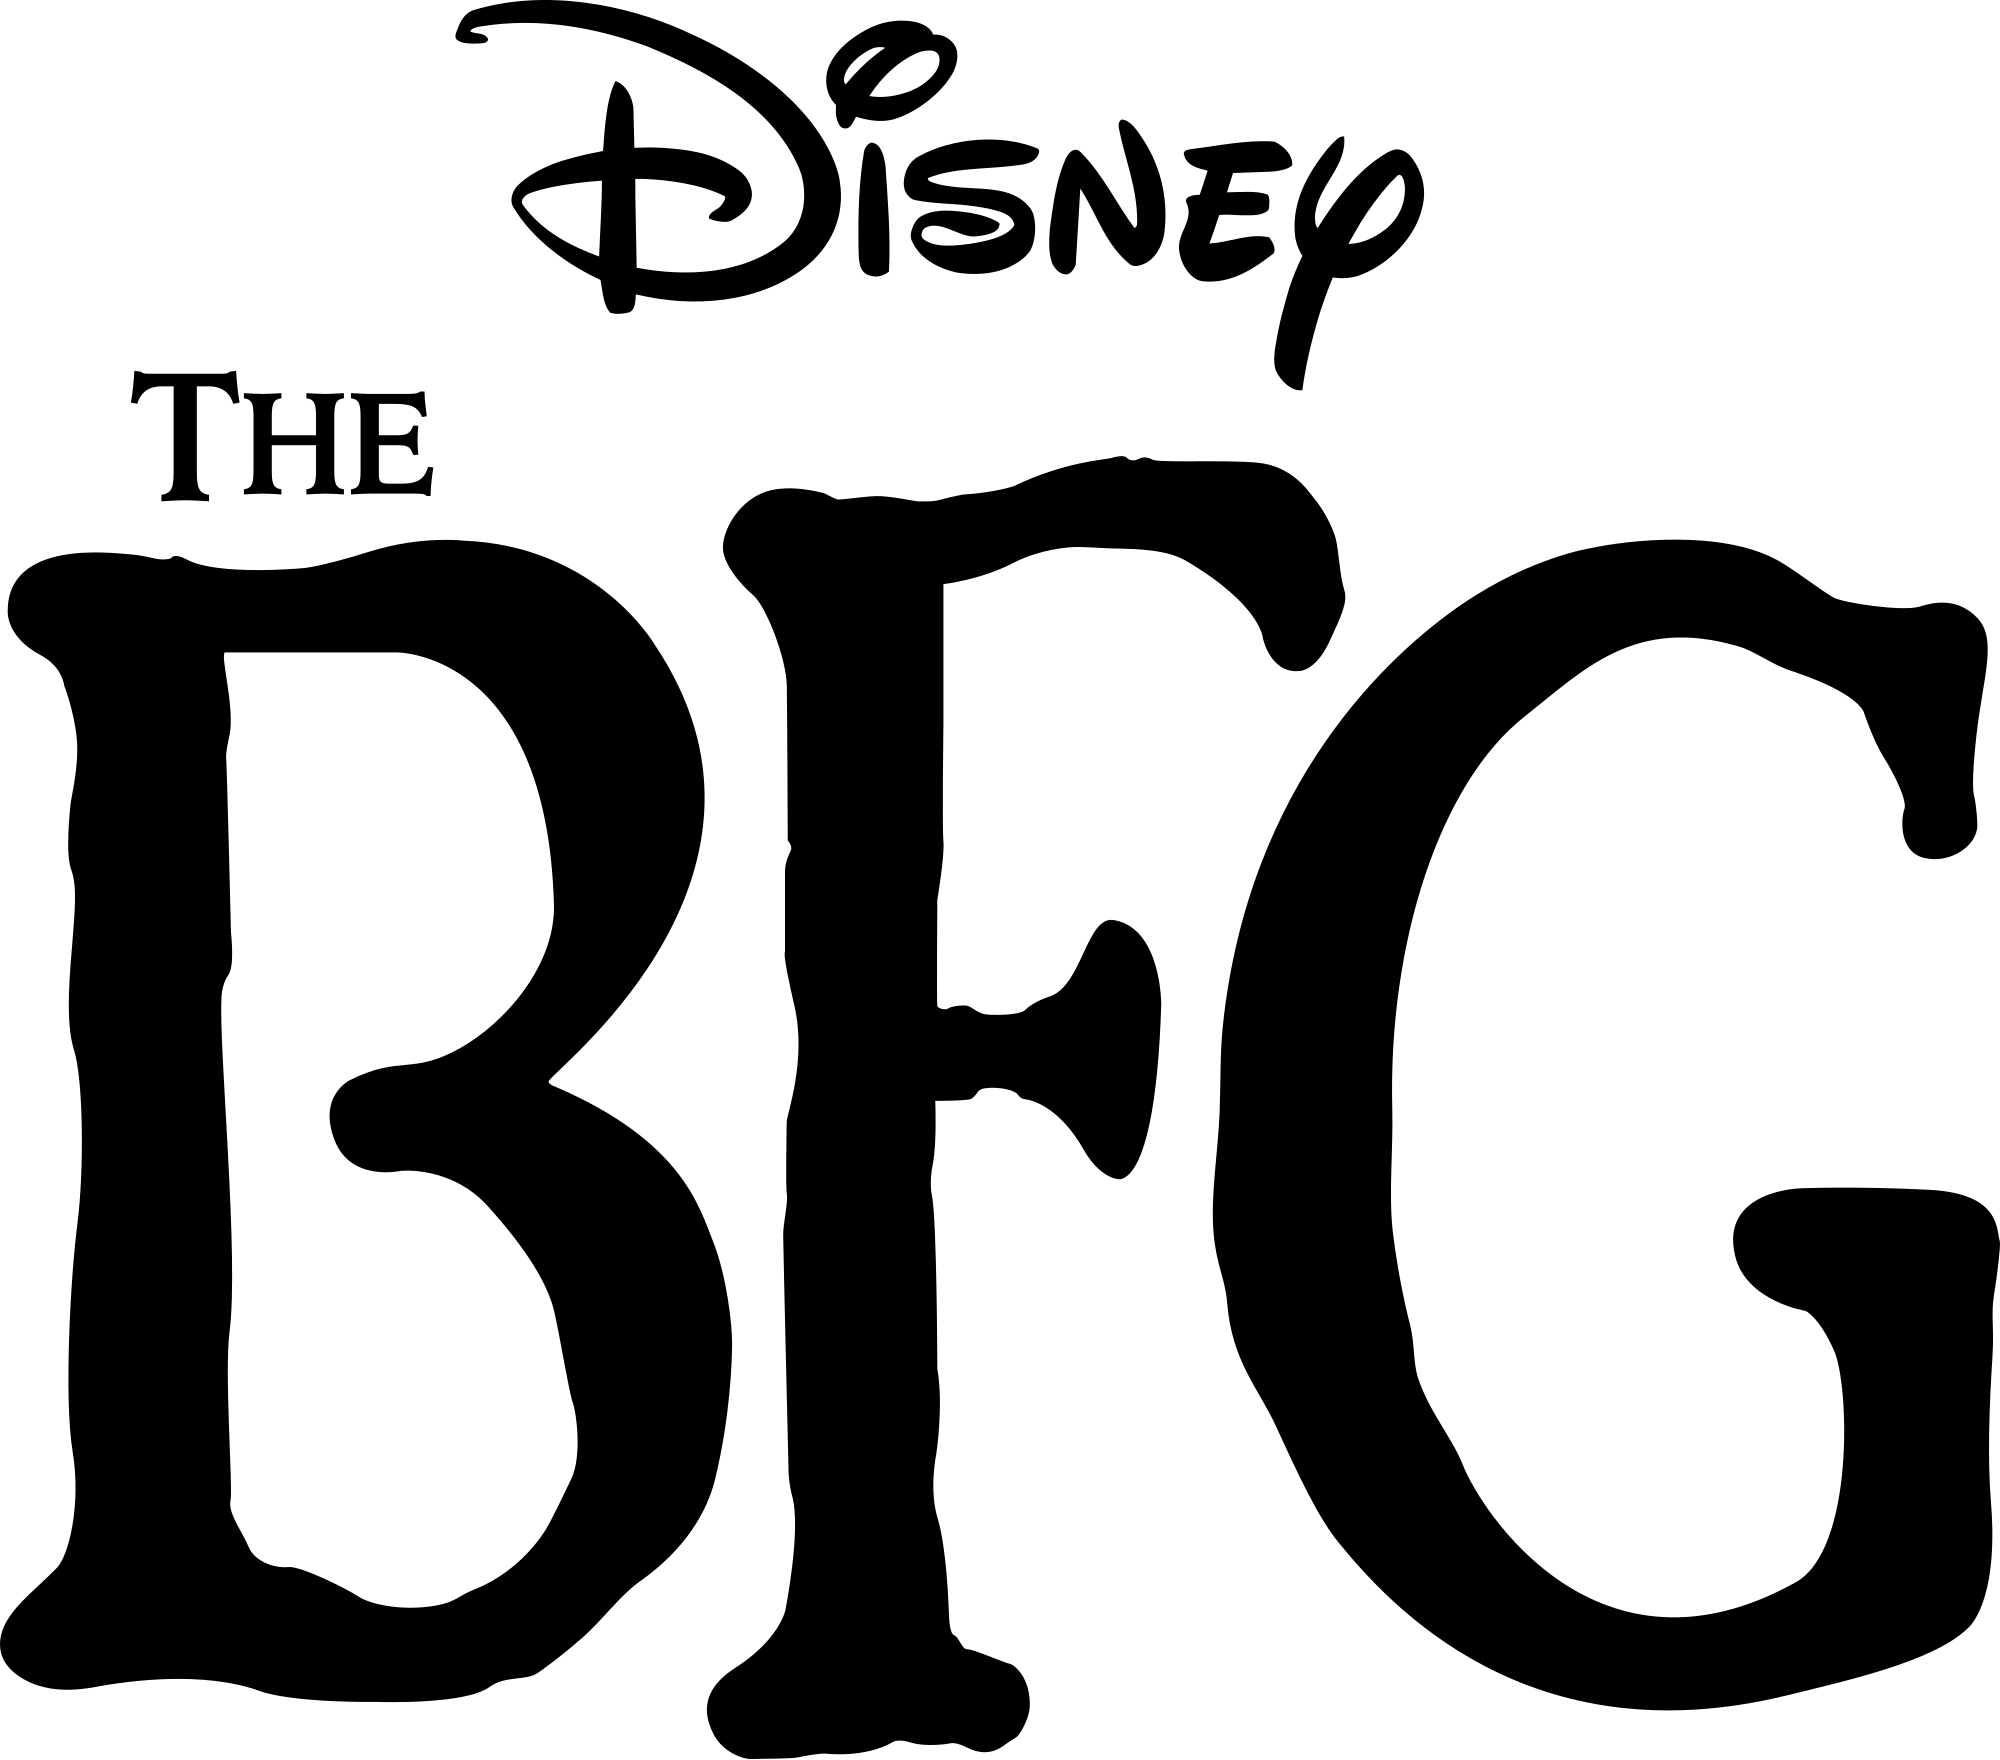 BFG Logo - File:The BFG (2016 film) logo.svg - Wikimedia Commons